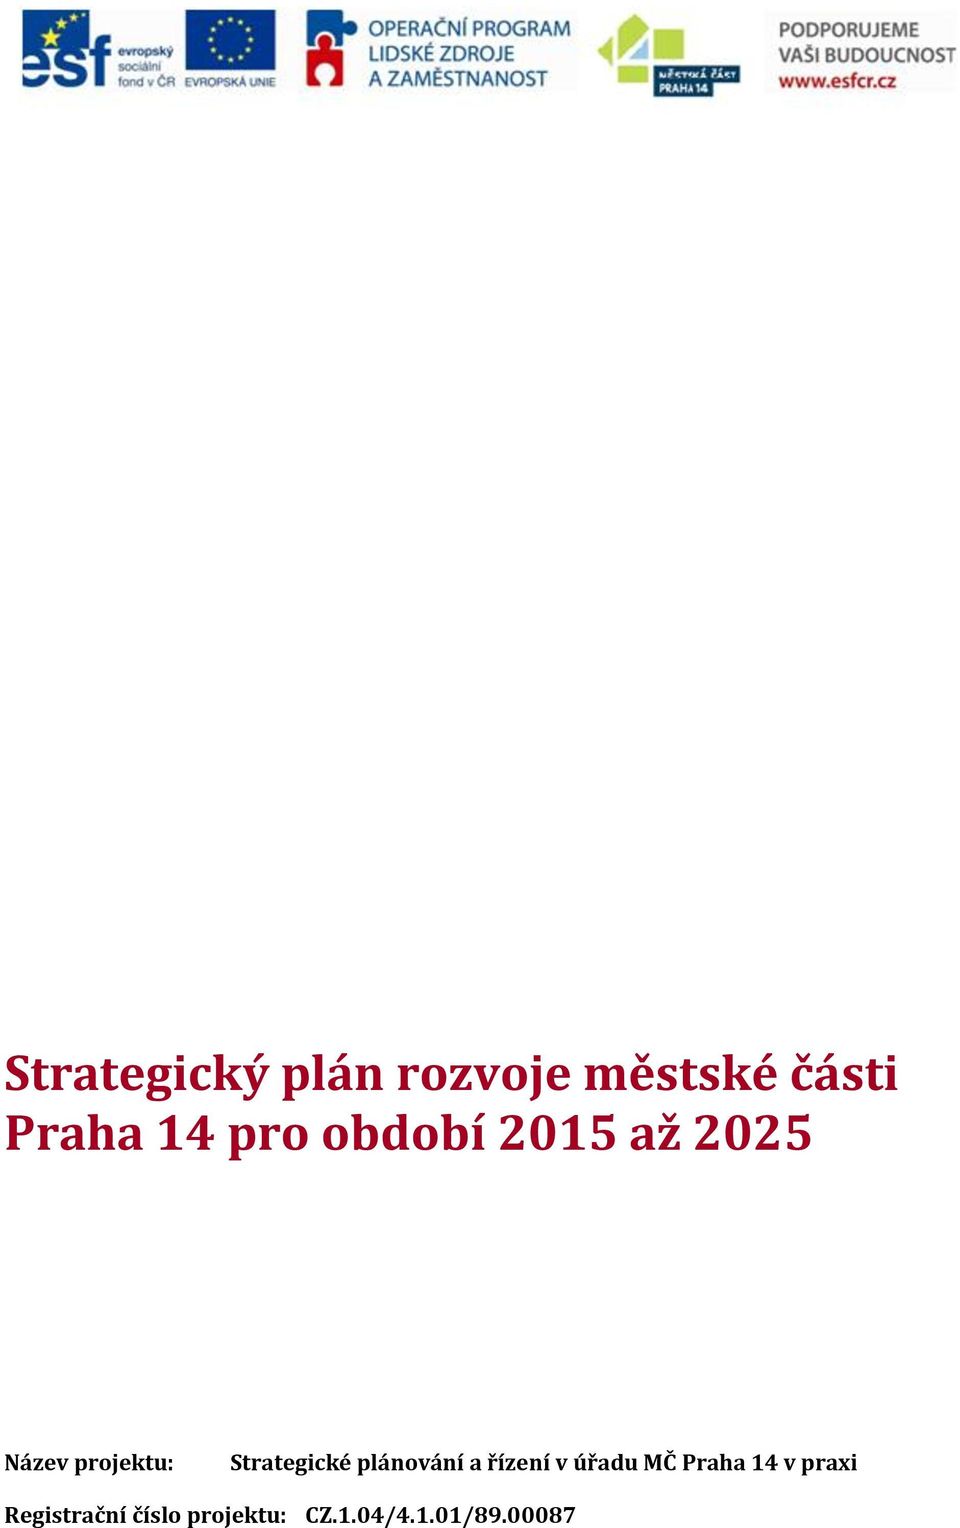 Strategické plánování a řízení v úřadu MČ Praha